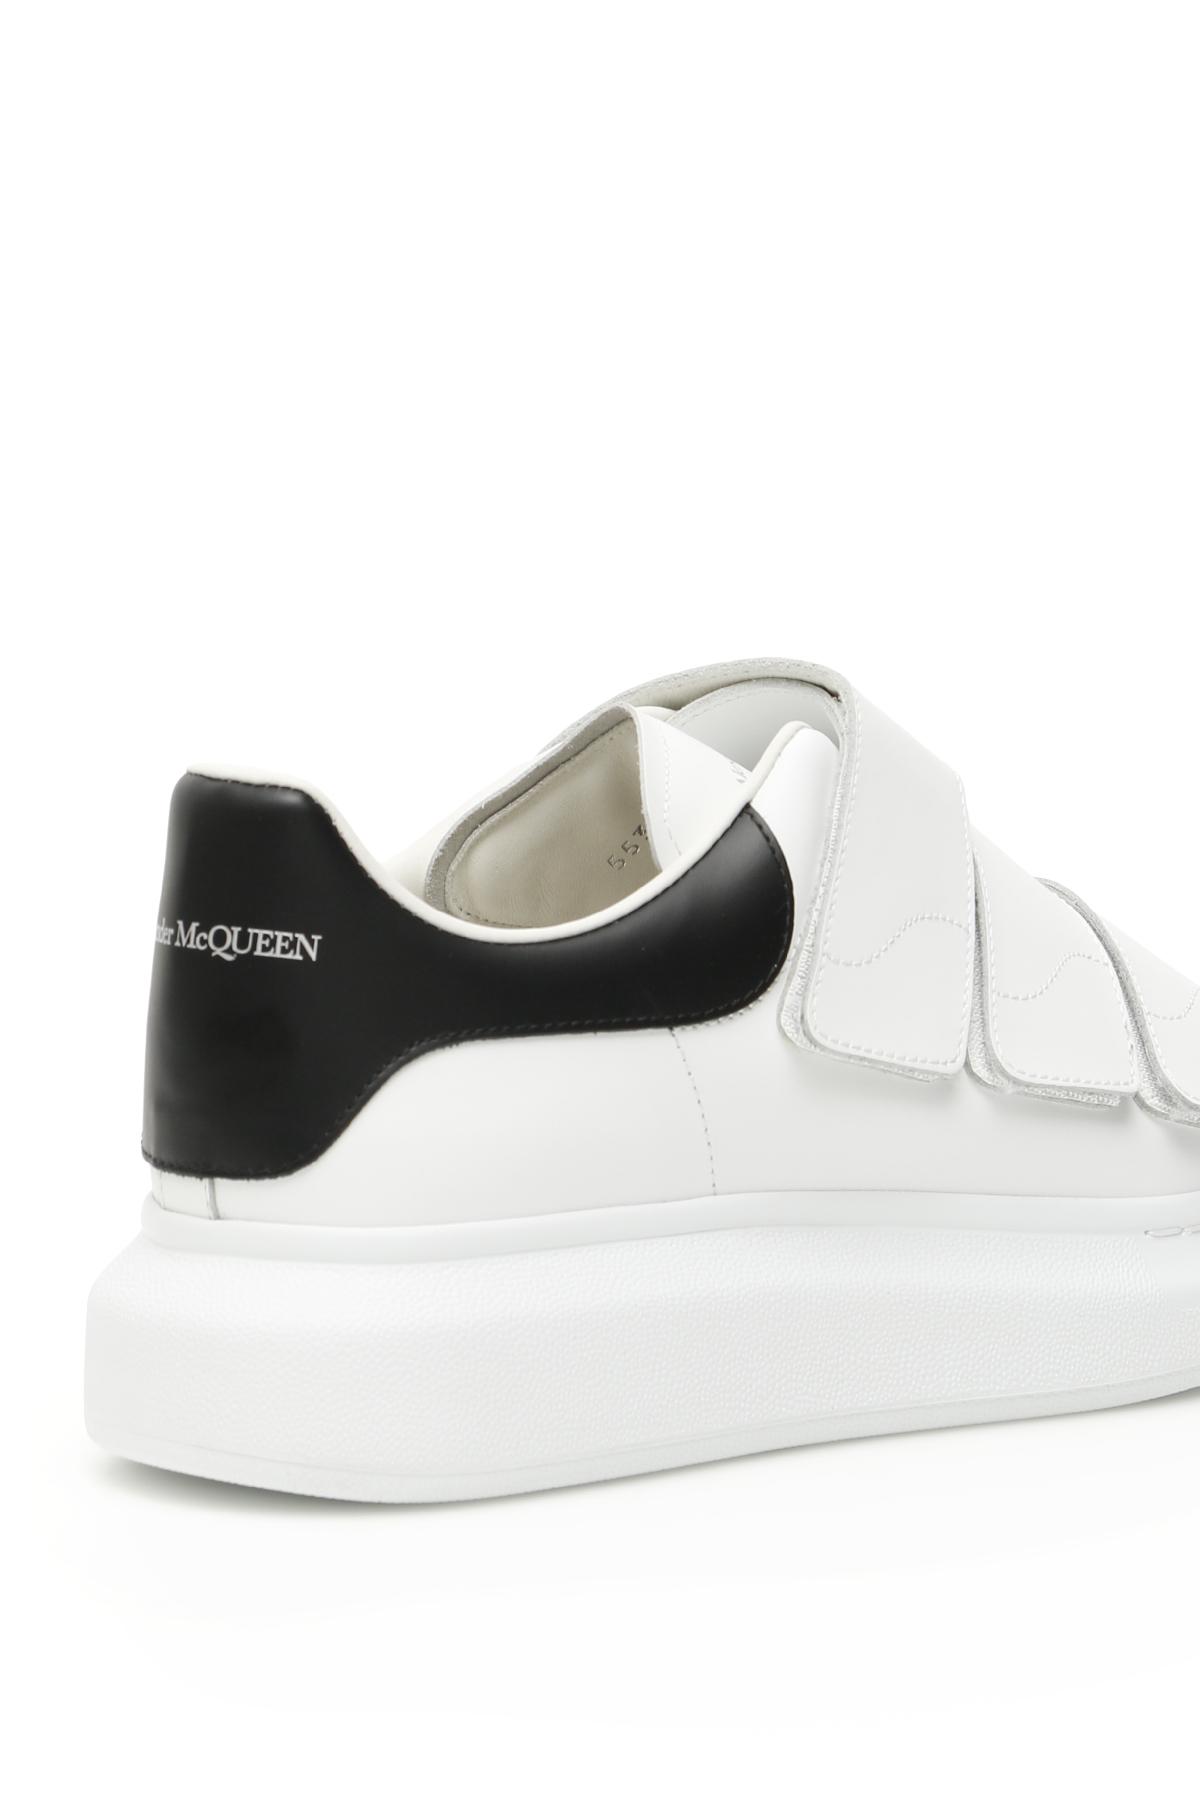 Oversized Triple Strap Sneaker in White/Black